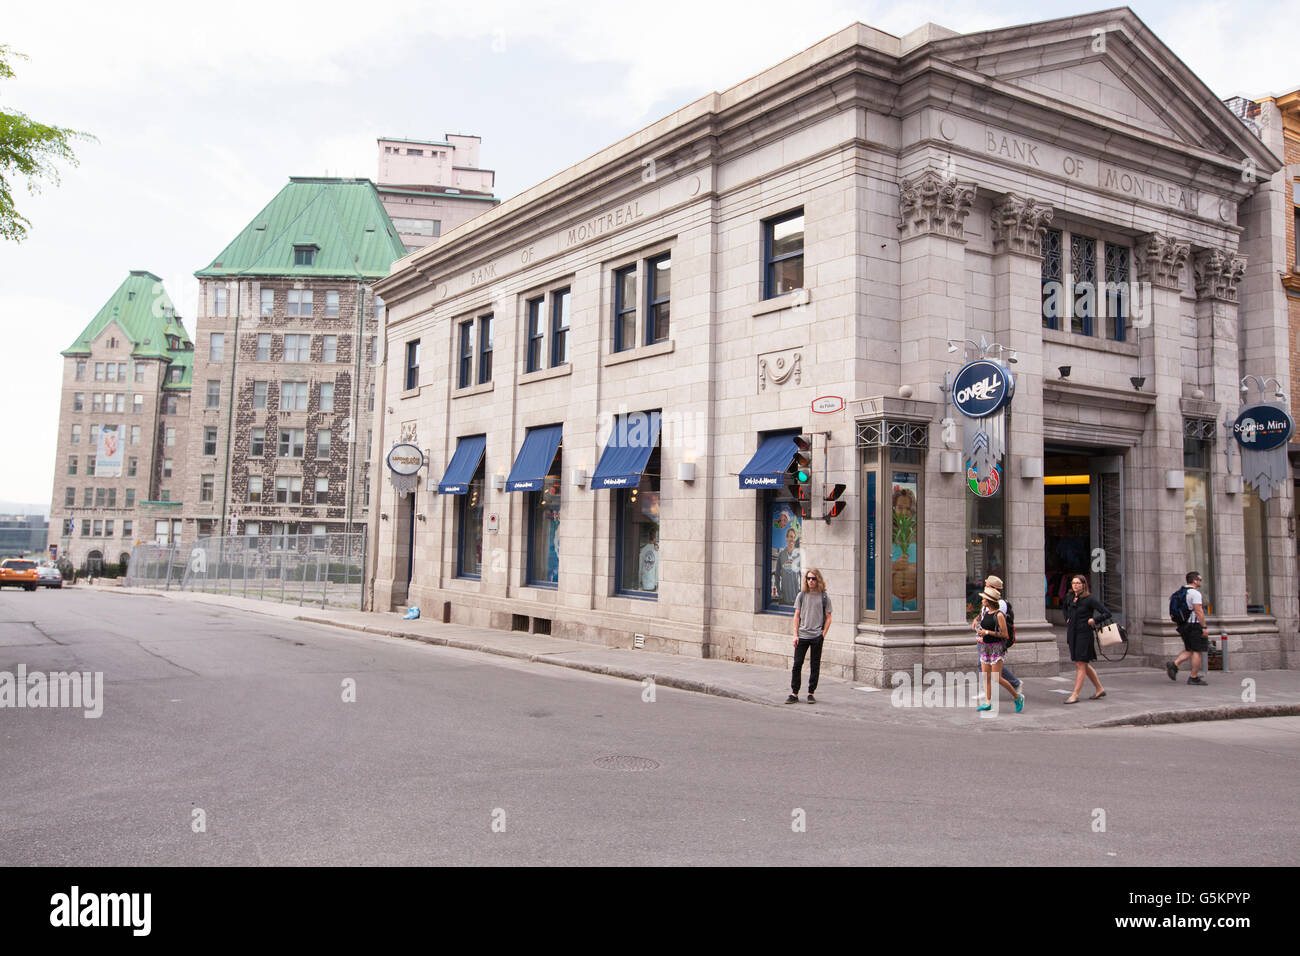 QUEBEC Stadt - 24. Mai 2016: Historisches Bankgebäude von Montreal in Quebec Altstadt, auf Rue Saint Jean. Stockfoto